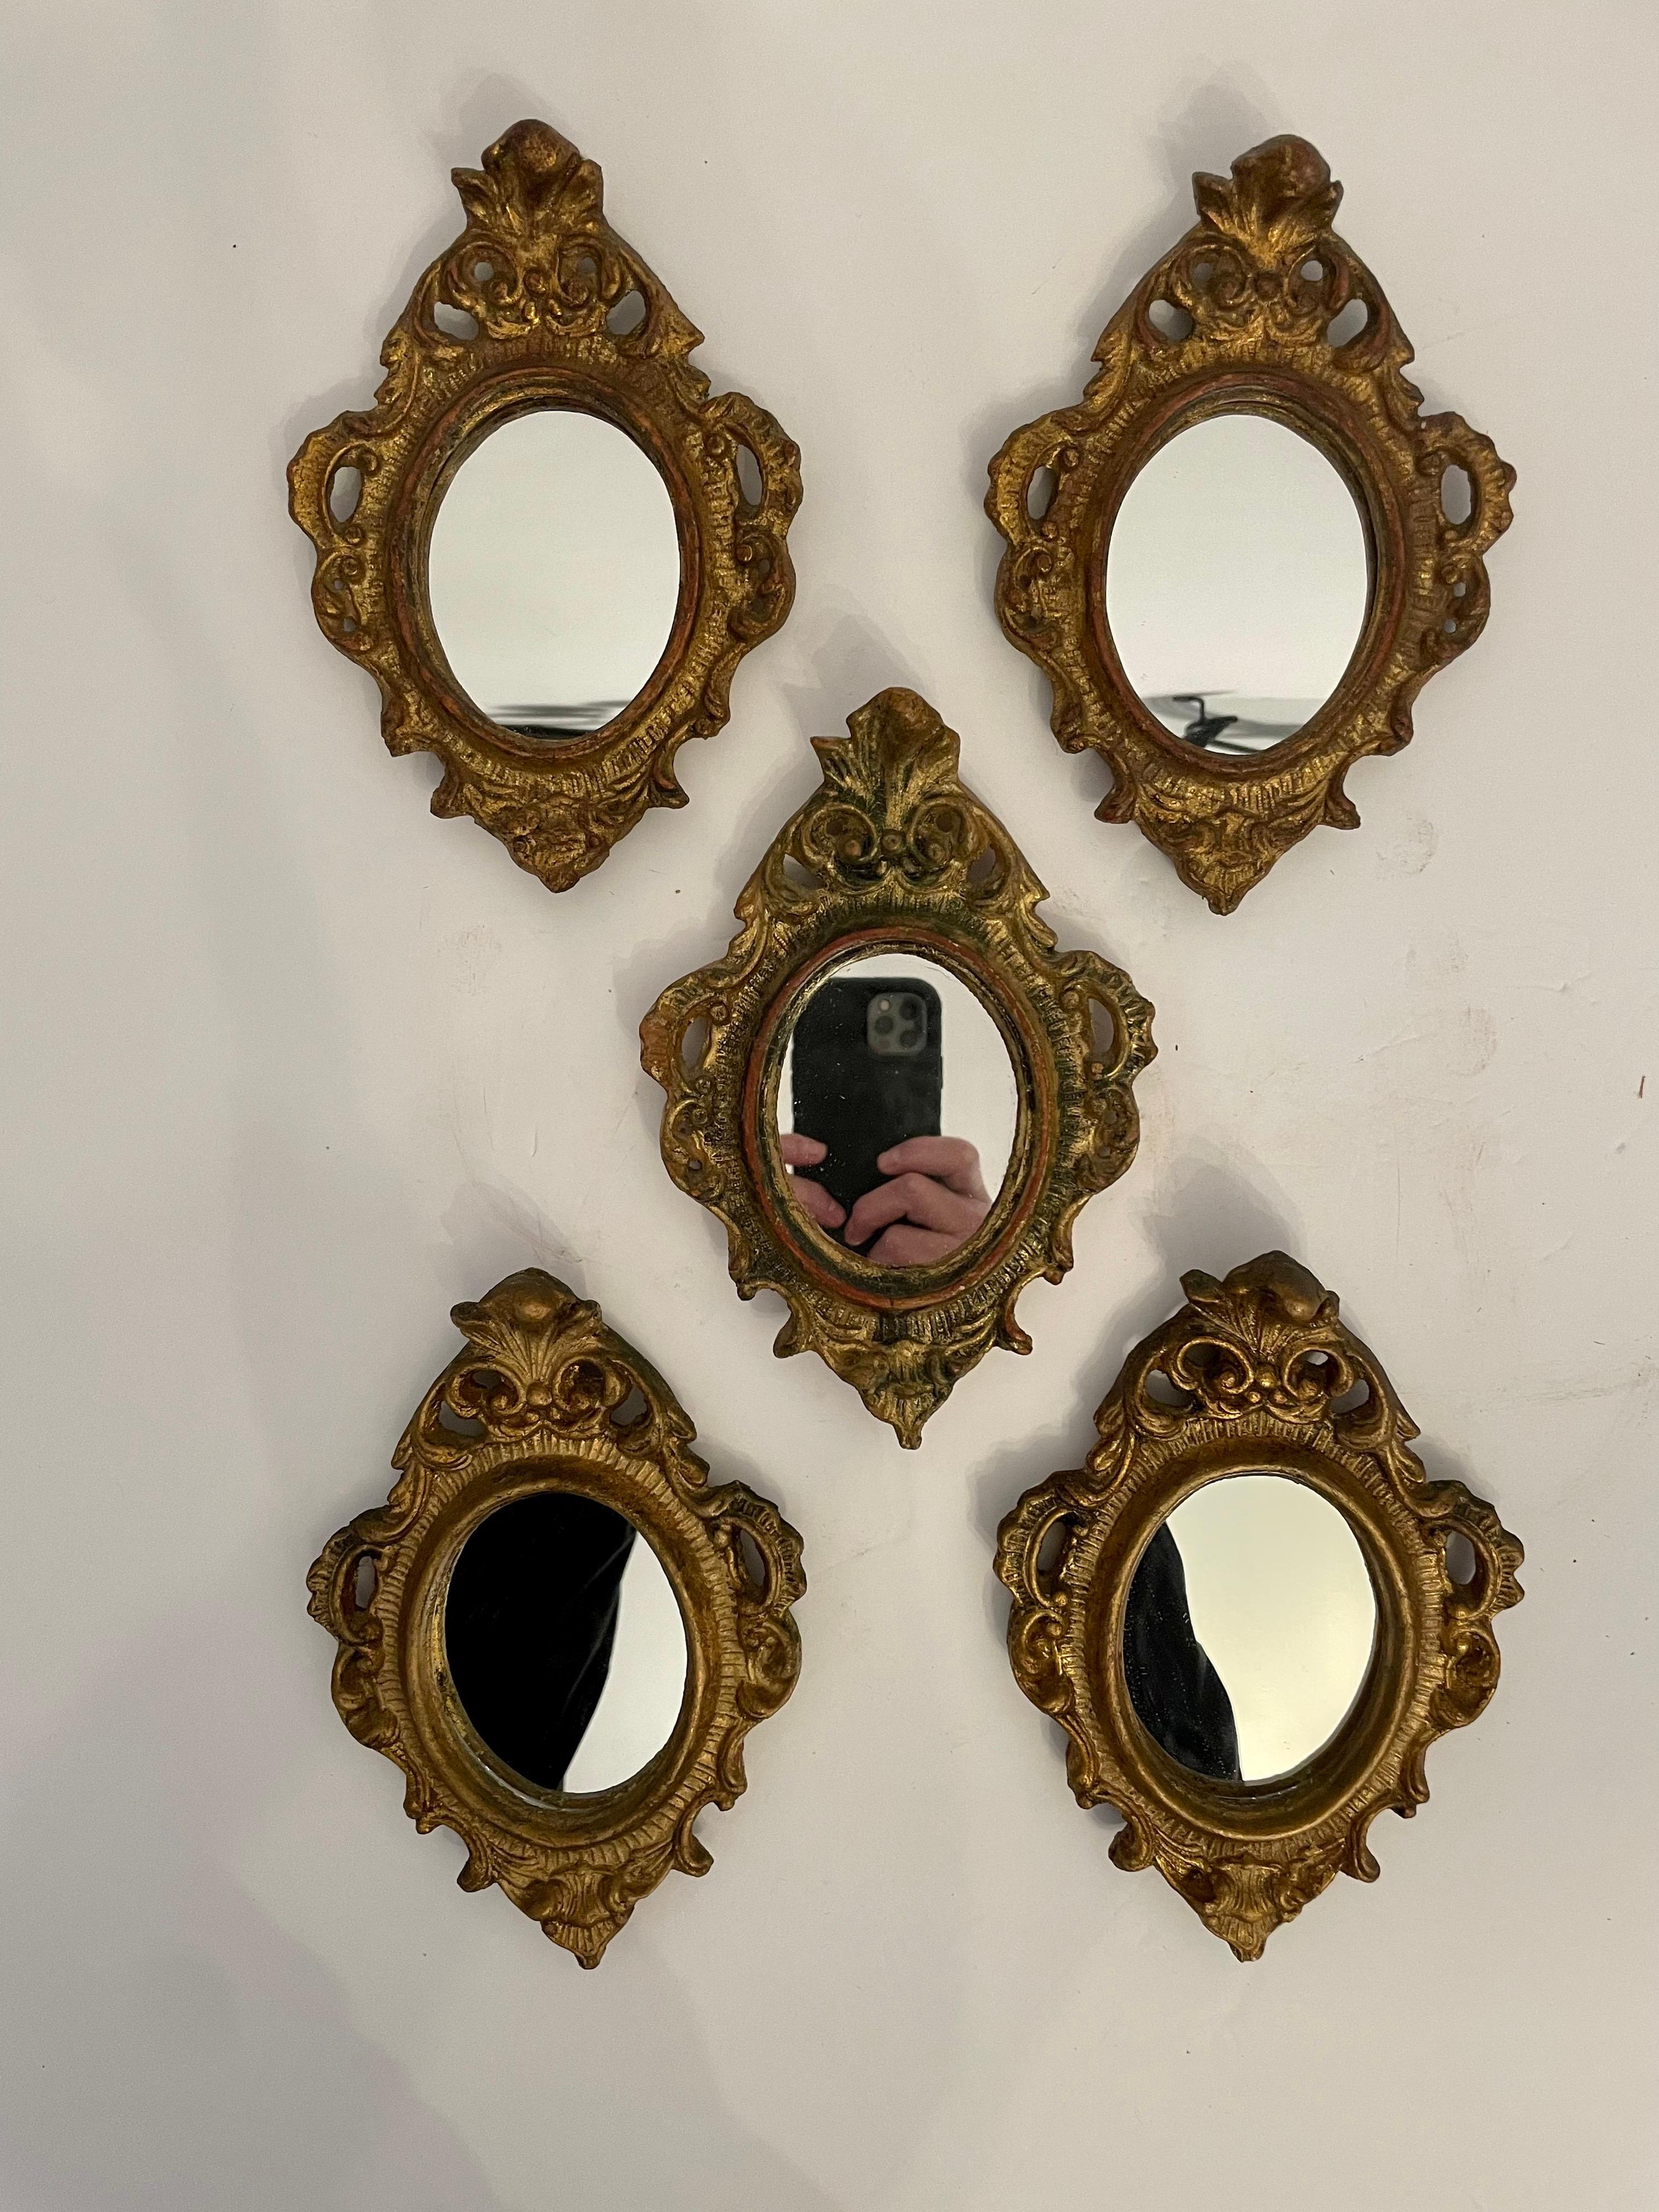 Groupe de cinq miroirs Florentine en bois doré italien de style Hollywood Regency. Tous en bon état, avec des miroirs récemment remplacés. Deux dans le haut de la photo mesurent 7,5